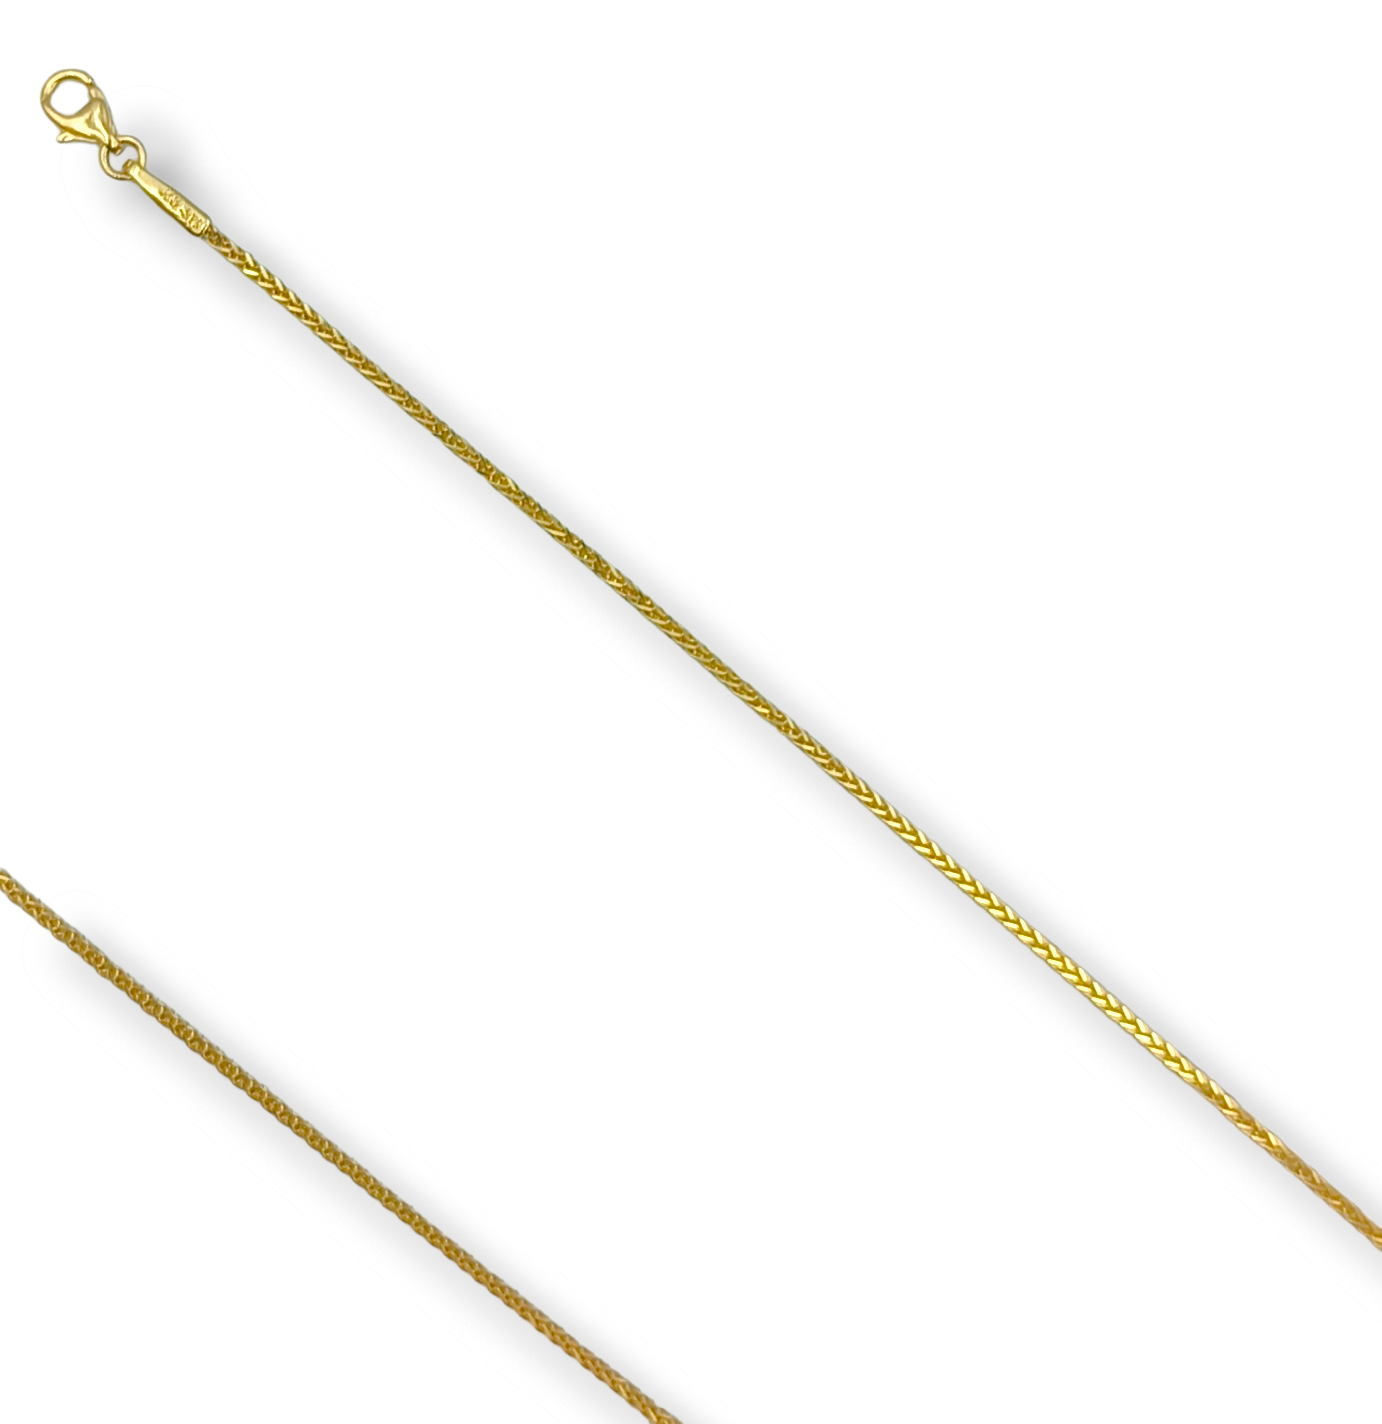 Gold 9K chain 45cm Spiga design